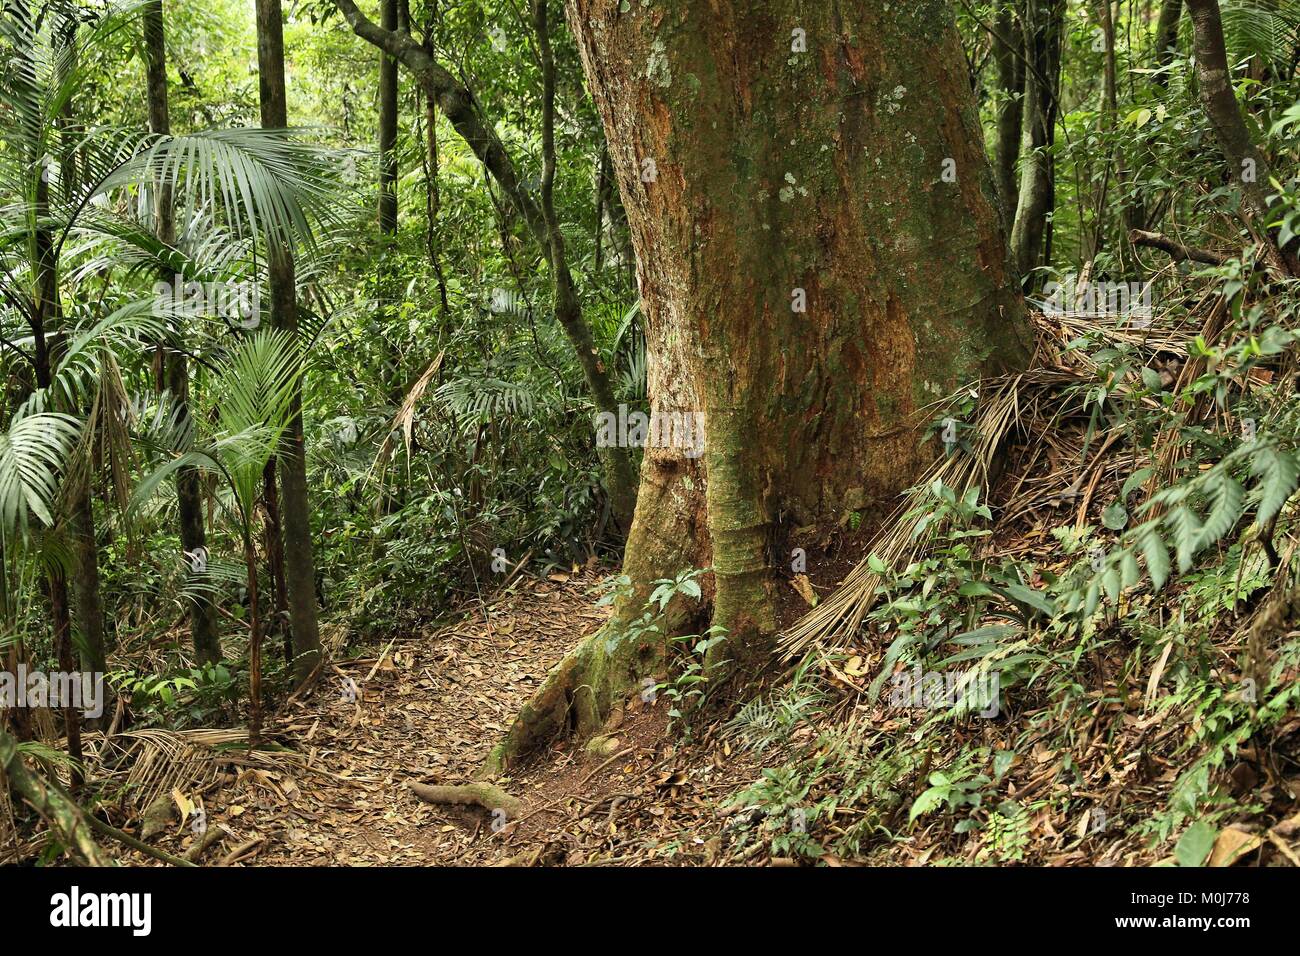 Brasile - jungle sentiero escursionistico a Mata Atlantica (foresta pluviale atlantica biome) nella Serra dos Orgaos National Park (stato di Rio de Janeiro). Foto Stock